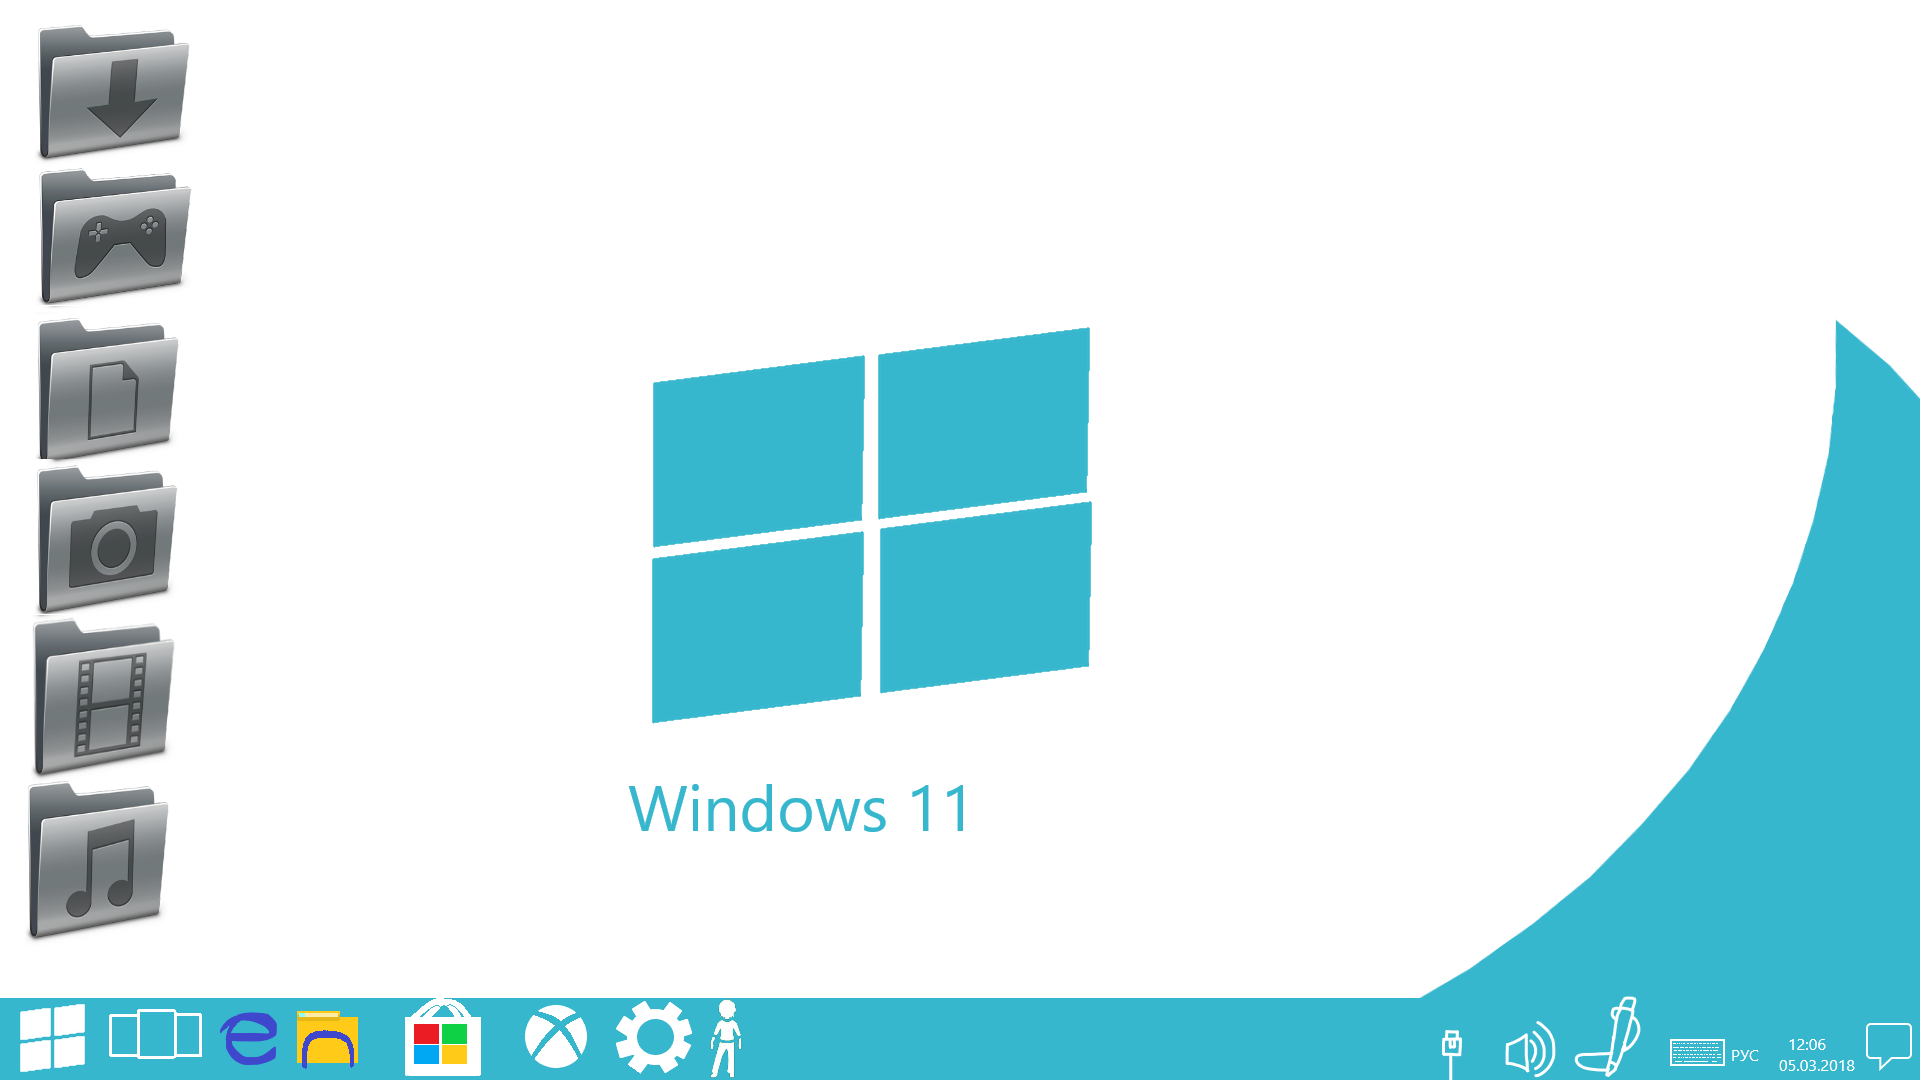 Windows 11 Wallpaper In 4k Windows 11 Wallpapers 2020 Broken Panda Images